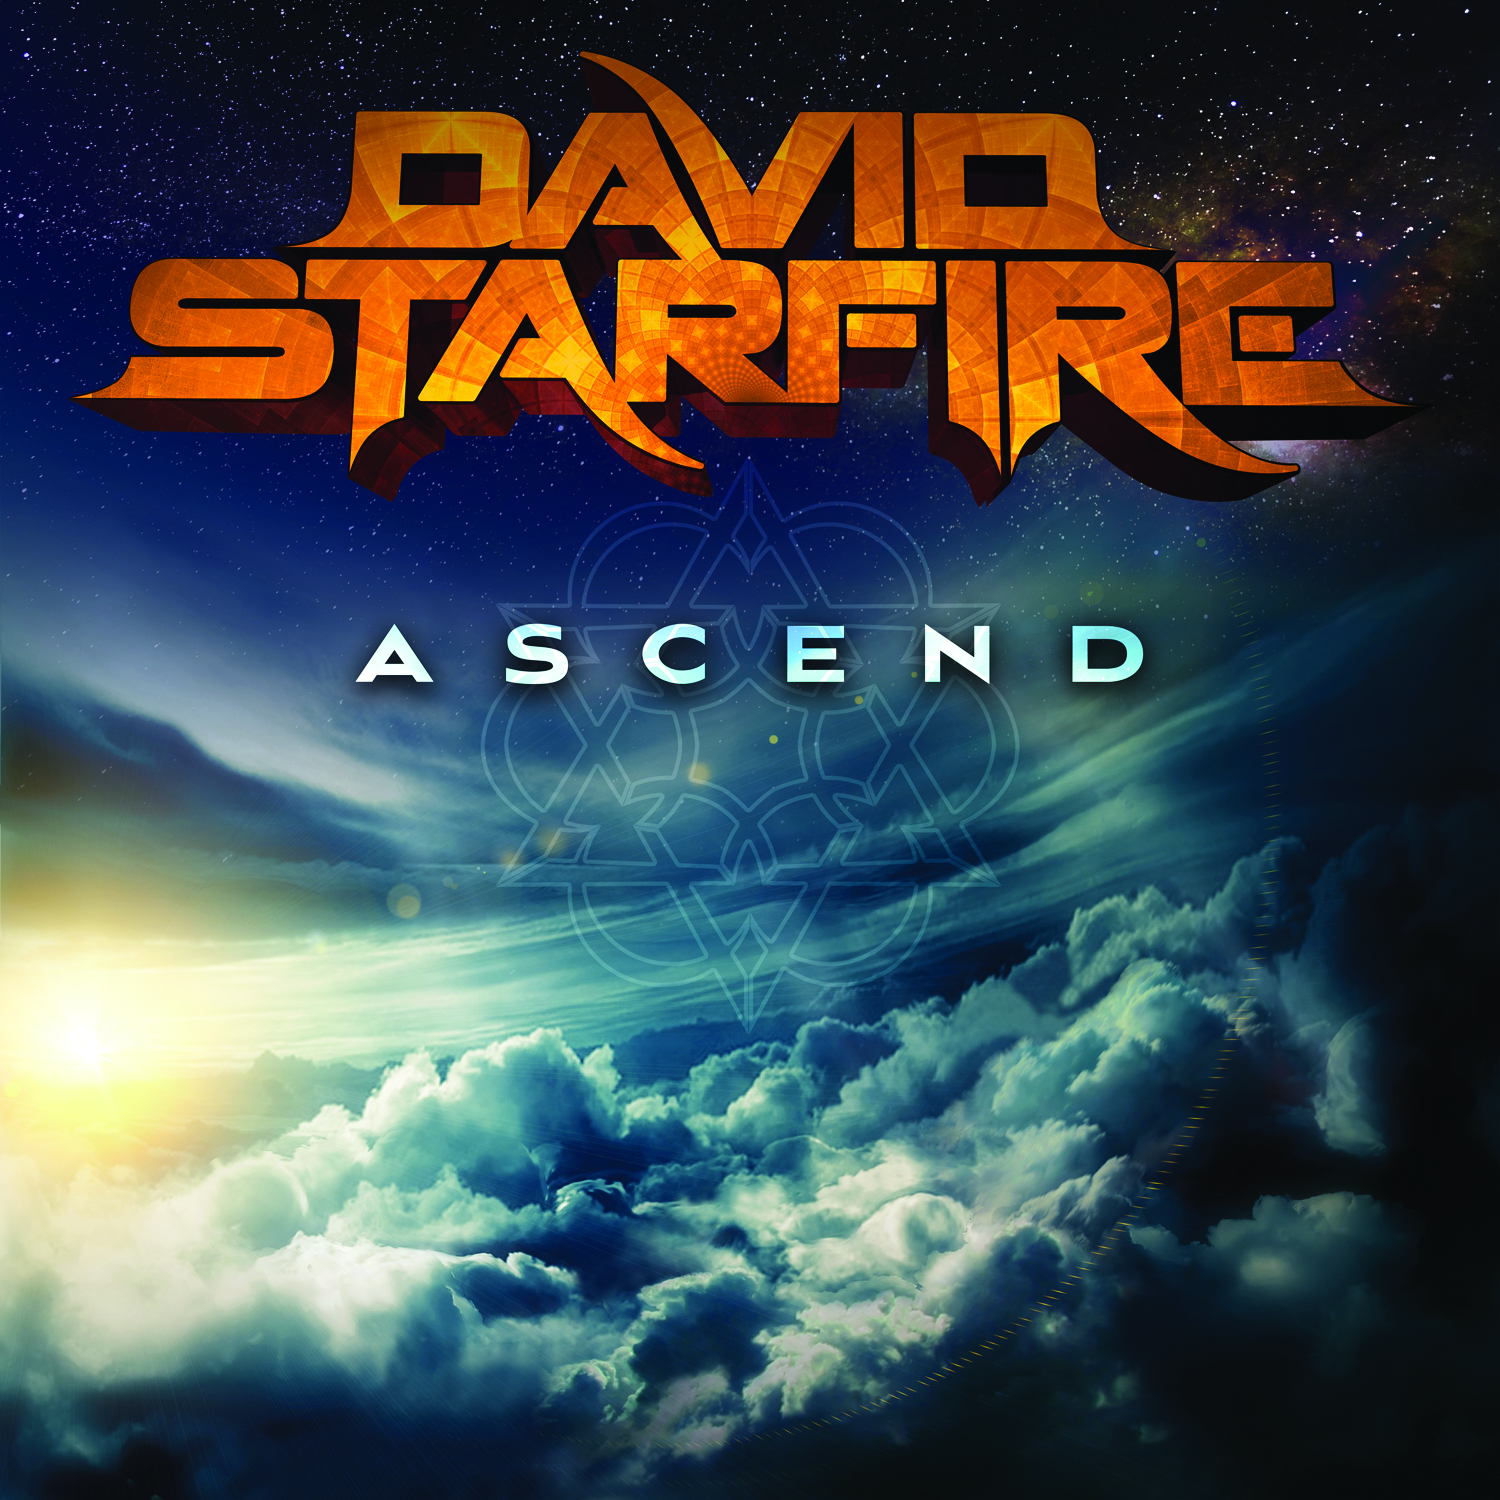 David Starfire – Ascend